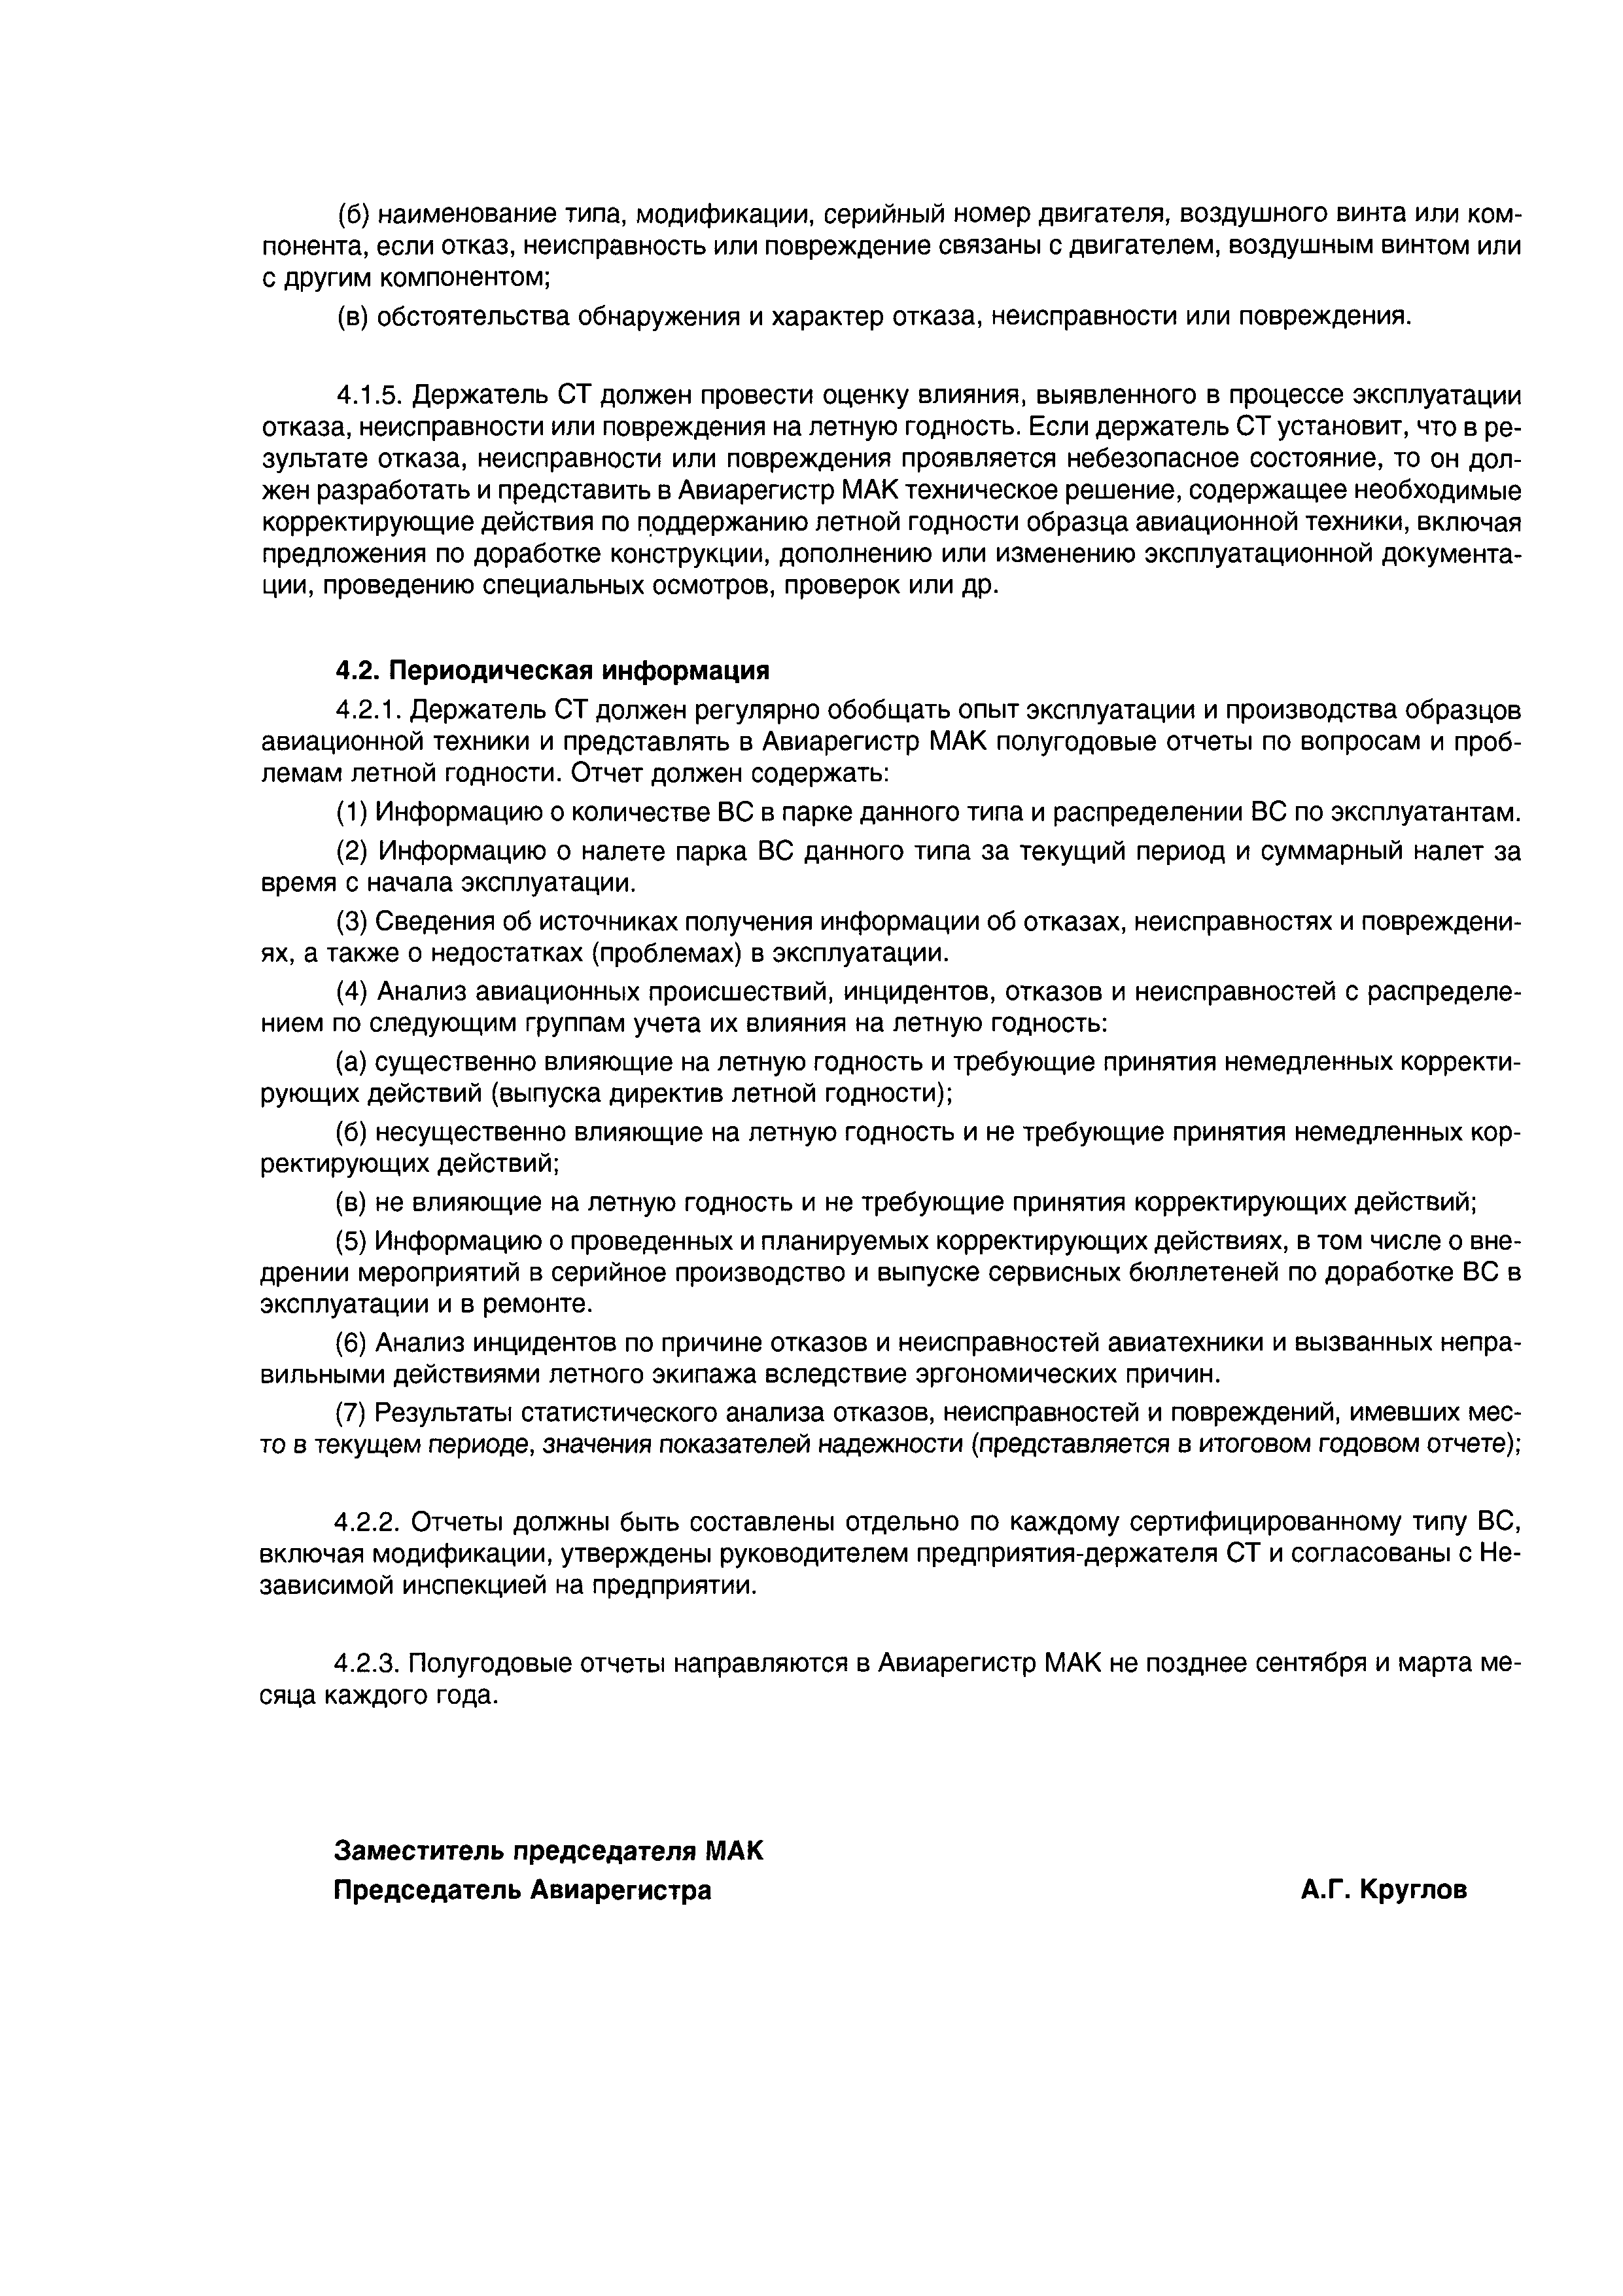 Директивное письмо 03-2004